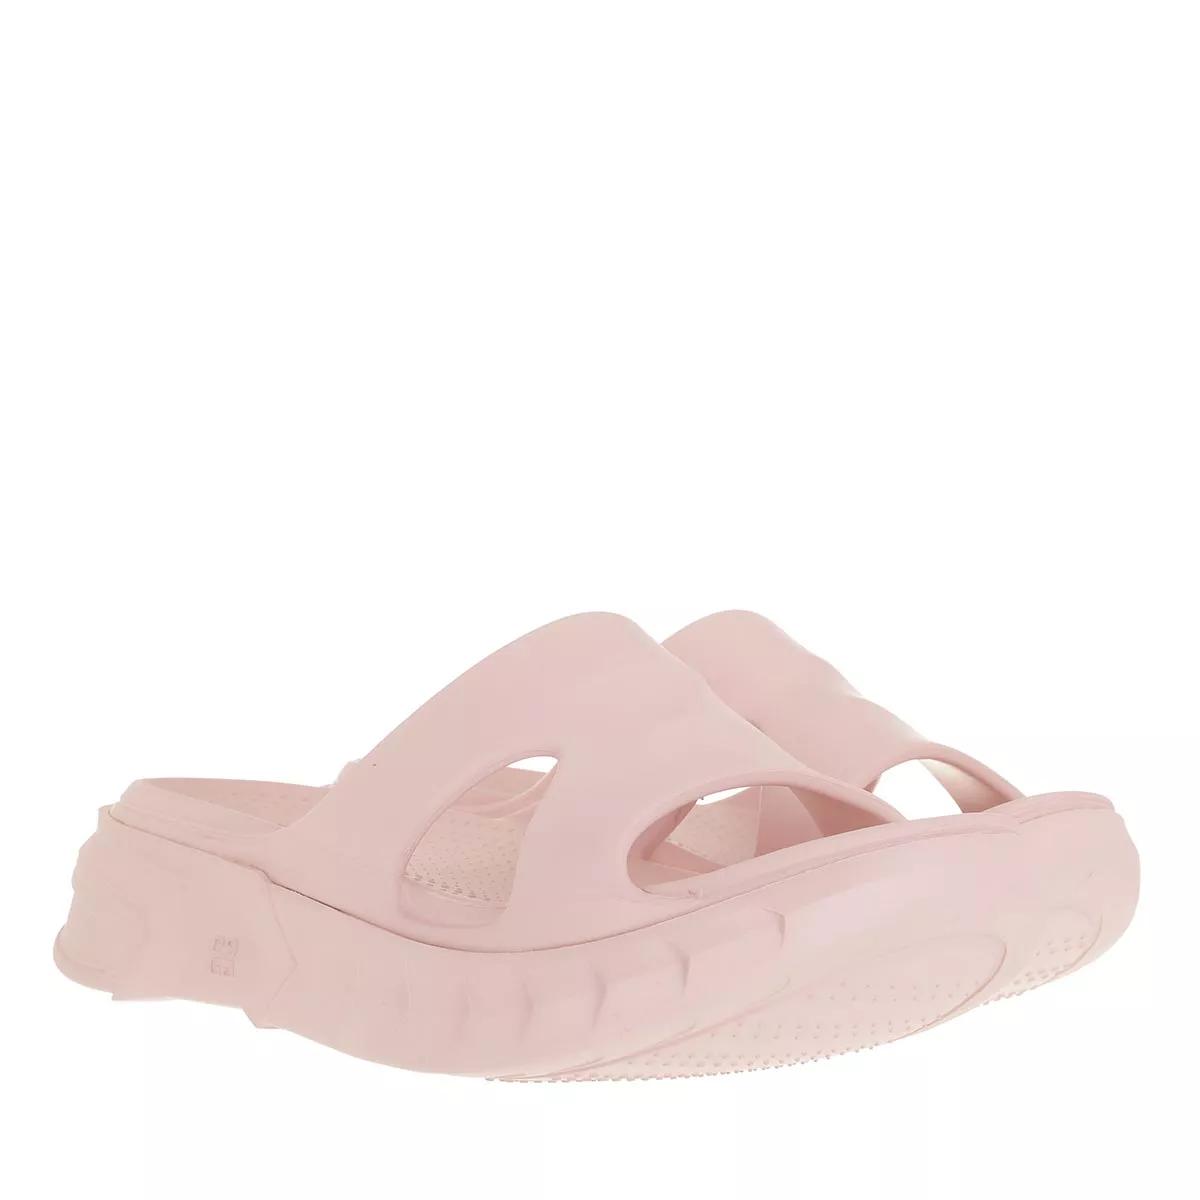 Givenchy Sandalen - Marshmallow Sandals - Gr. 36 (EU) - in Rosa - für Damen von Givenchy